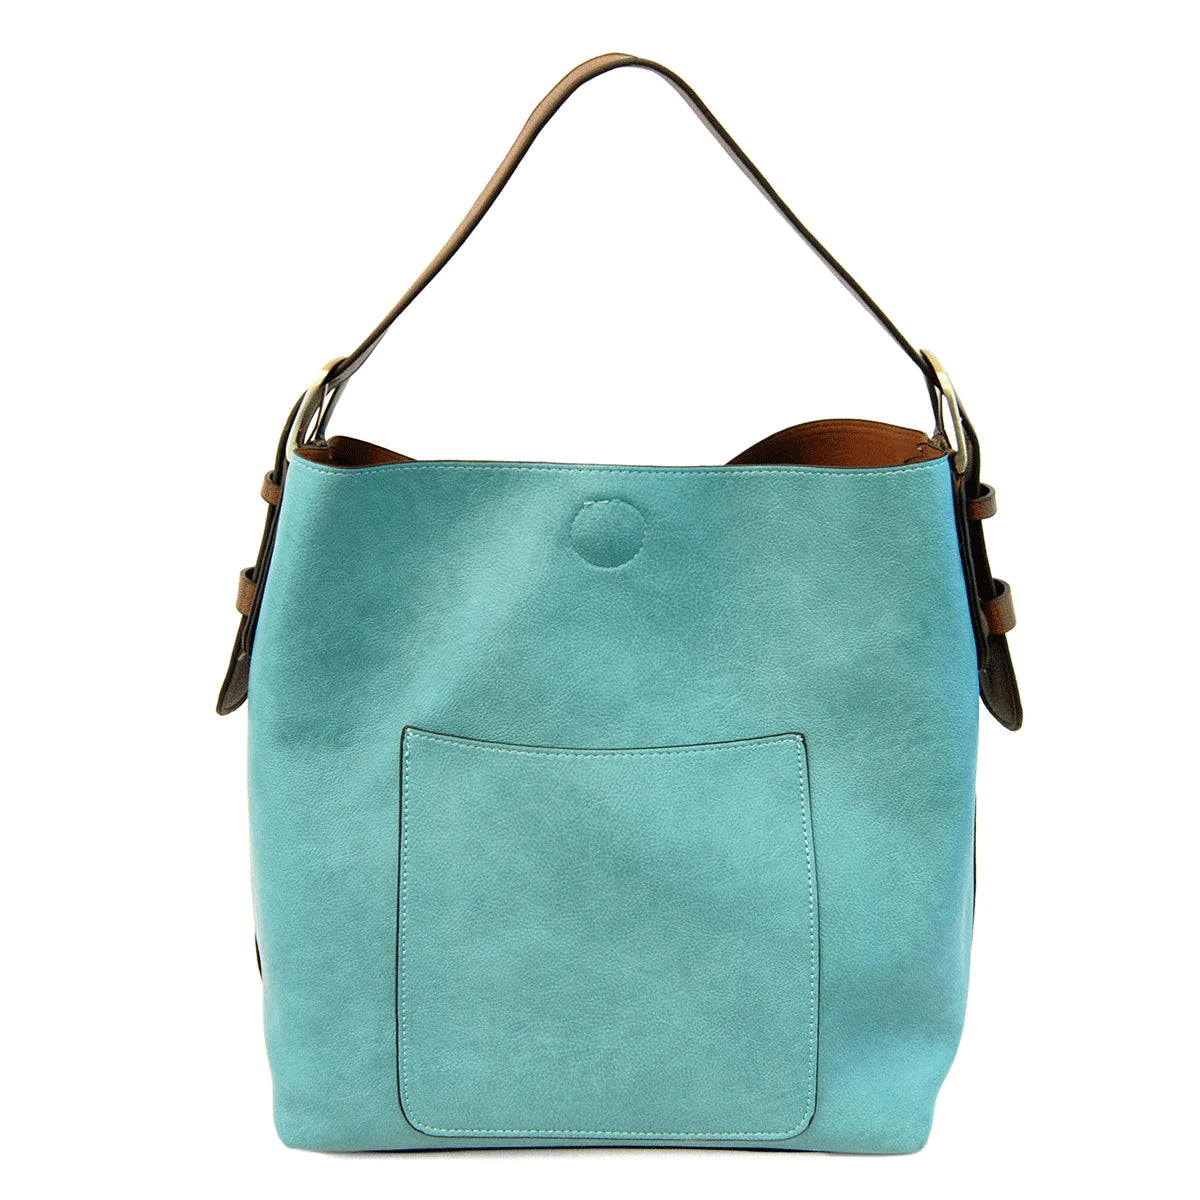 Hobo Handbag Turquoise/Coffee Handle